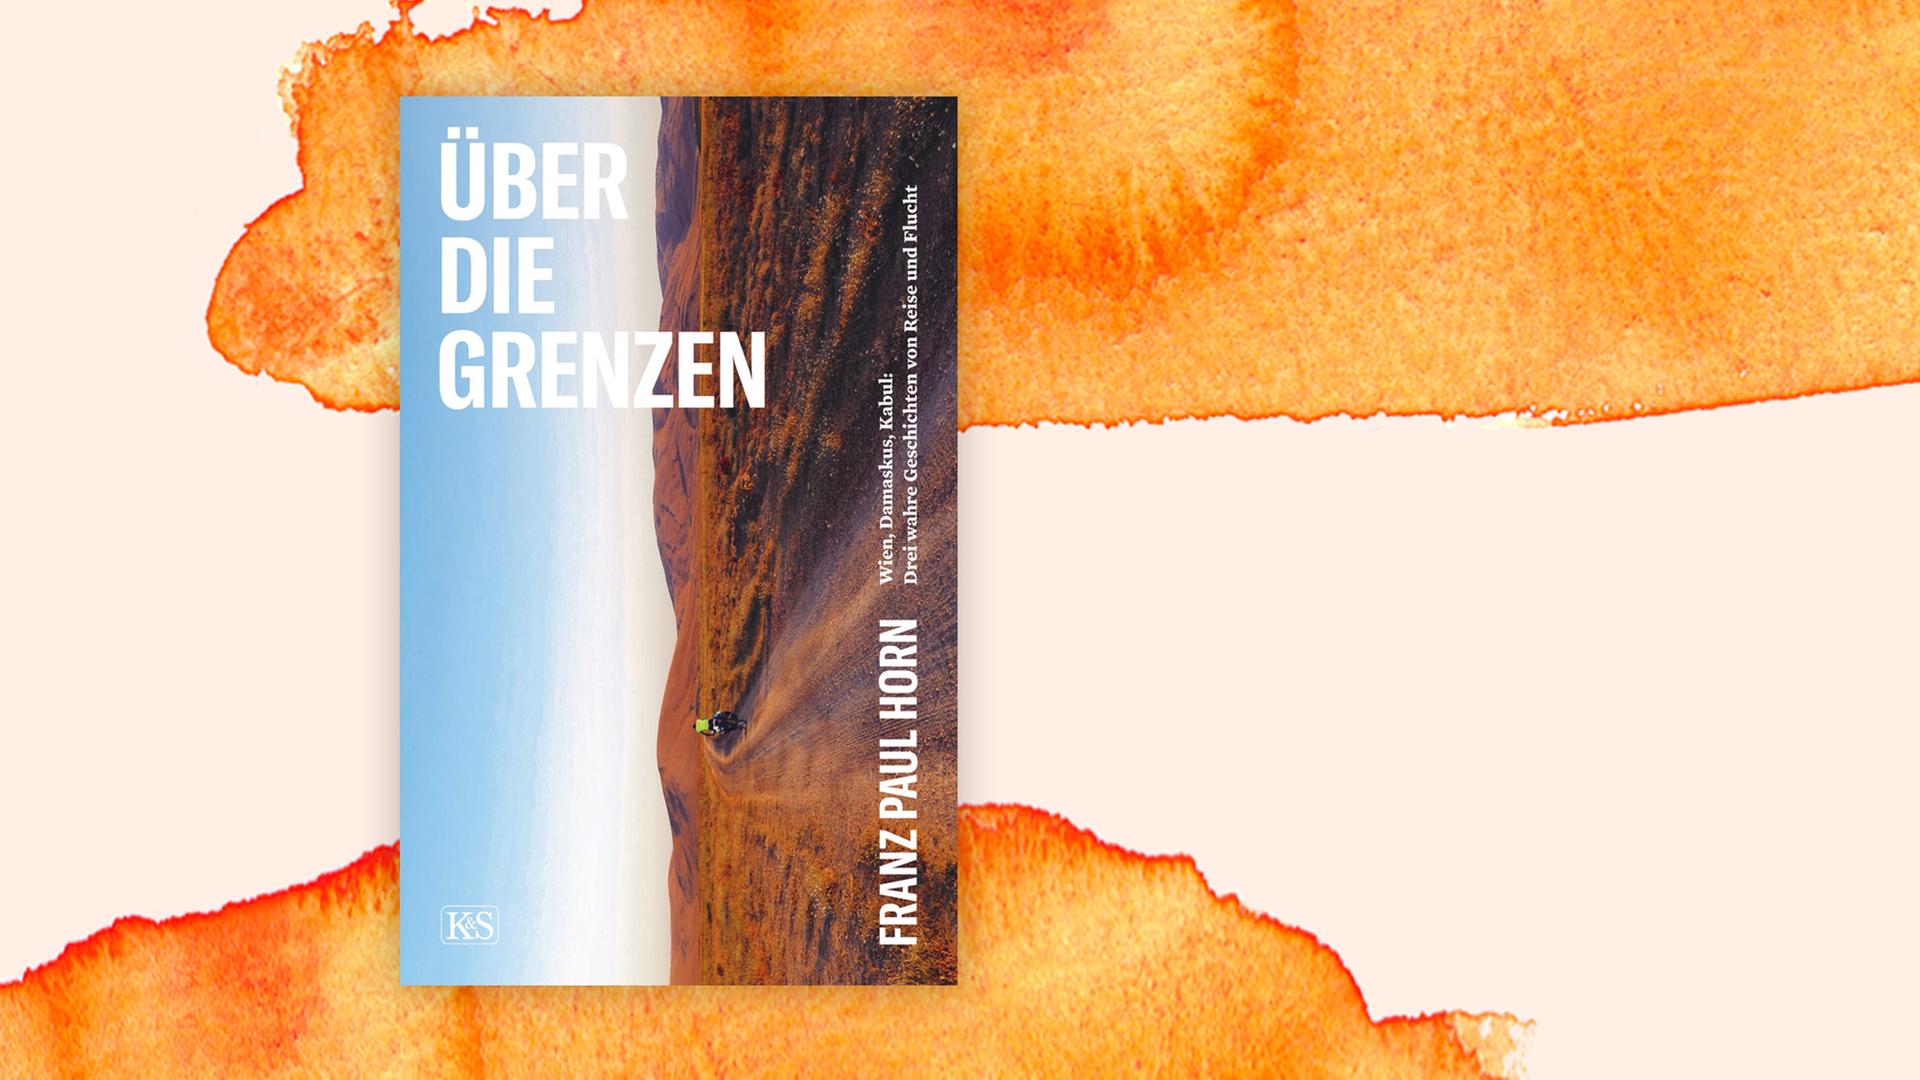 Cover von "Über die Grenzen" von Franz Paul Horn aus dem Kremayr & Scheriau Verlag